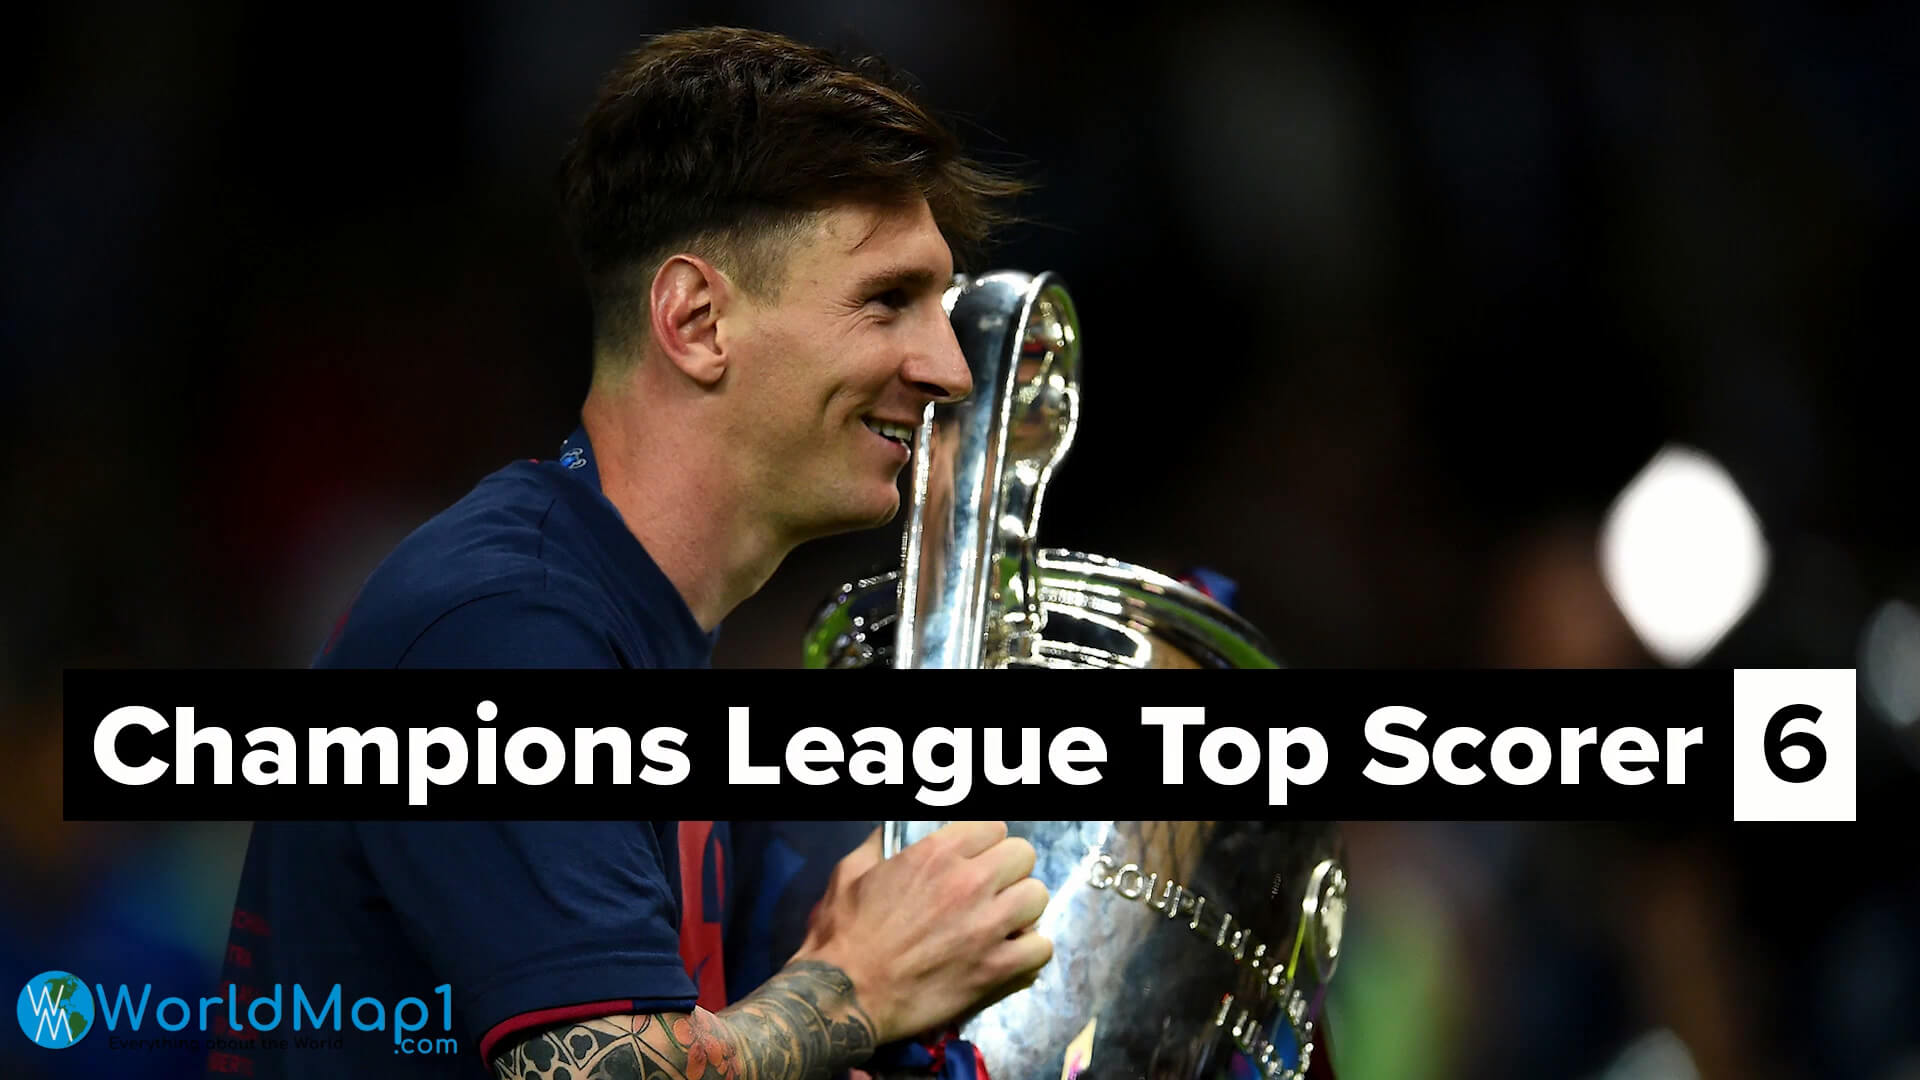 Messi remporte 6 fois le titre de meilleur buteur de la Ligue des champions